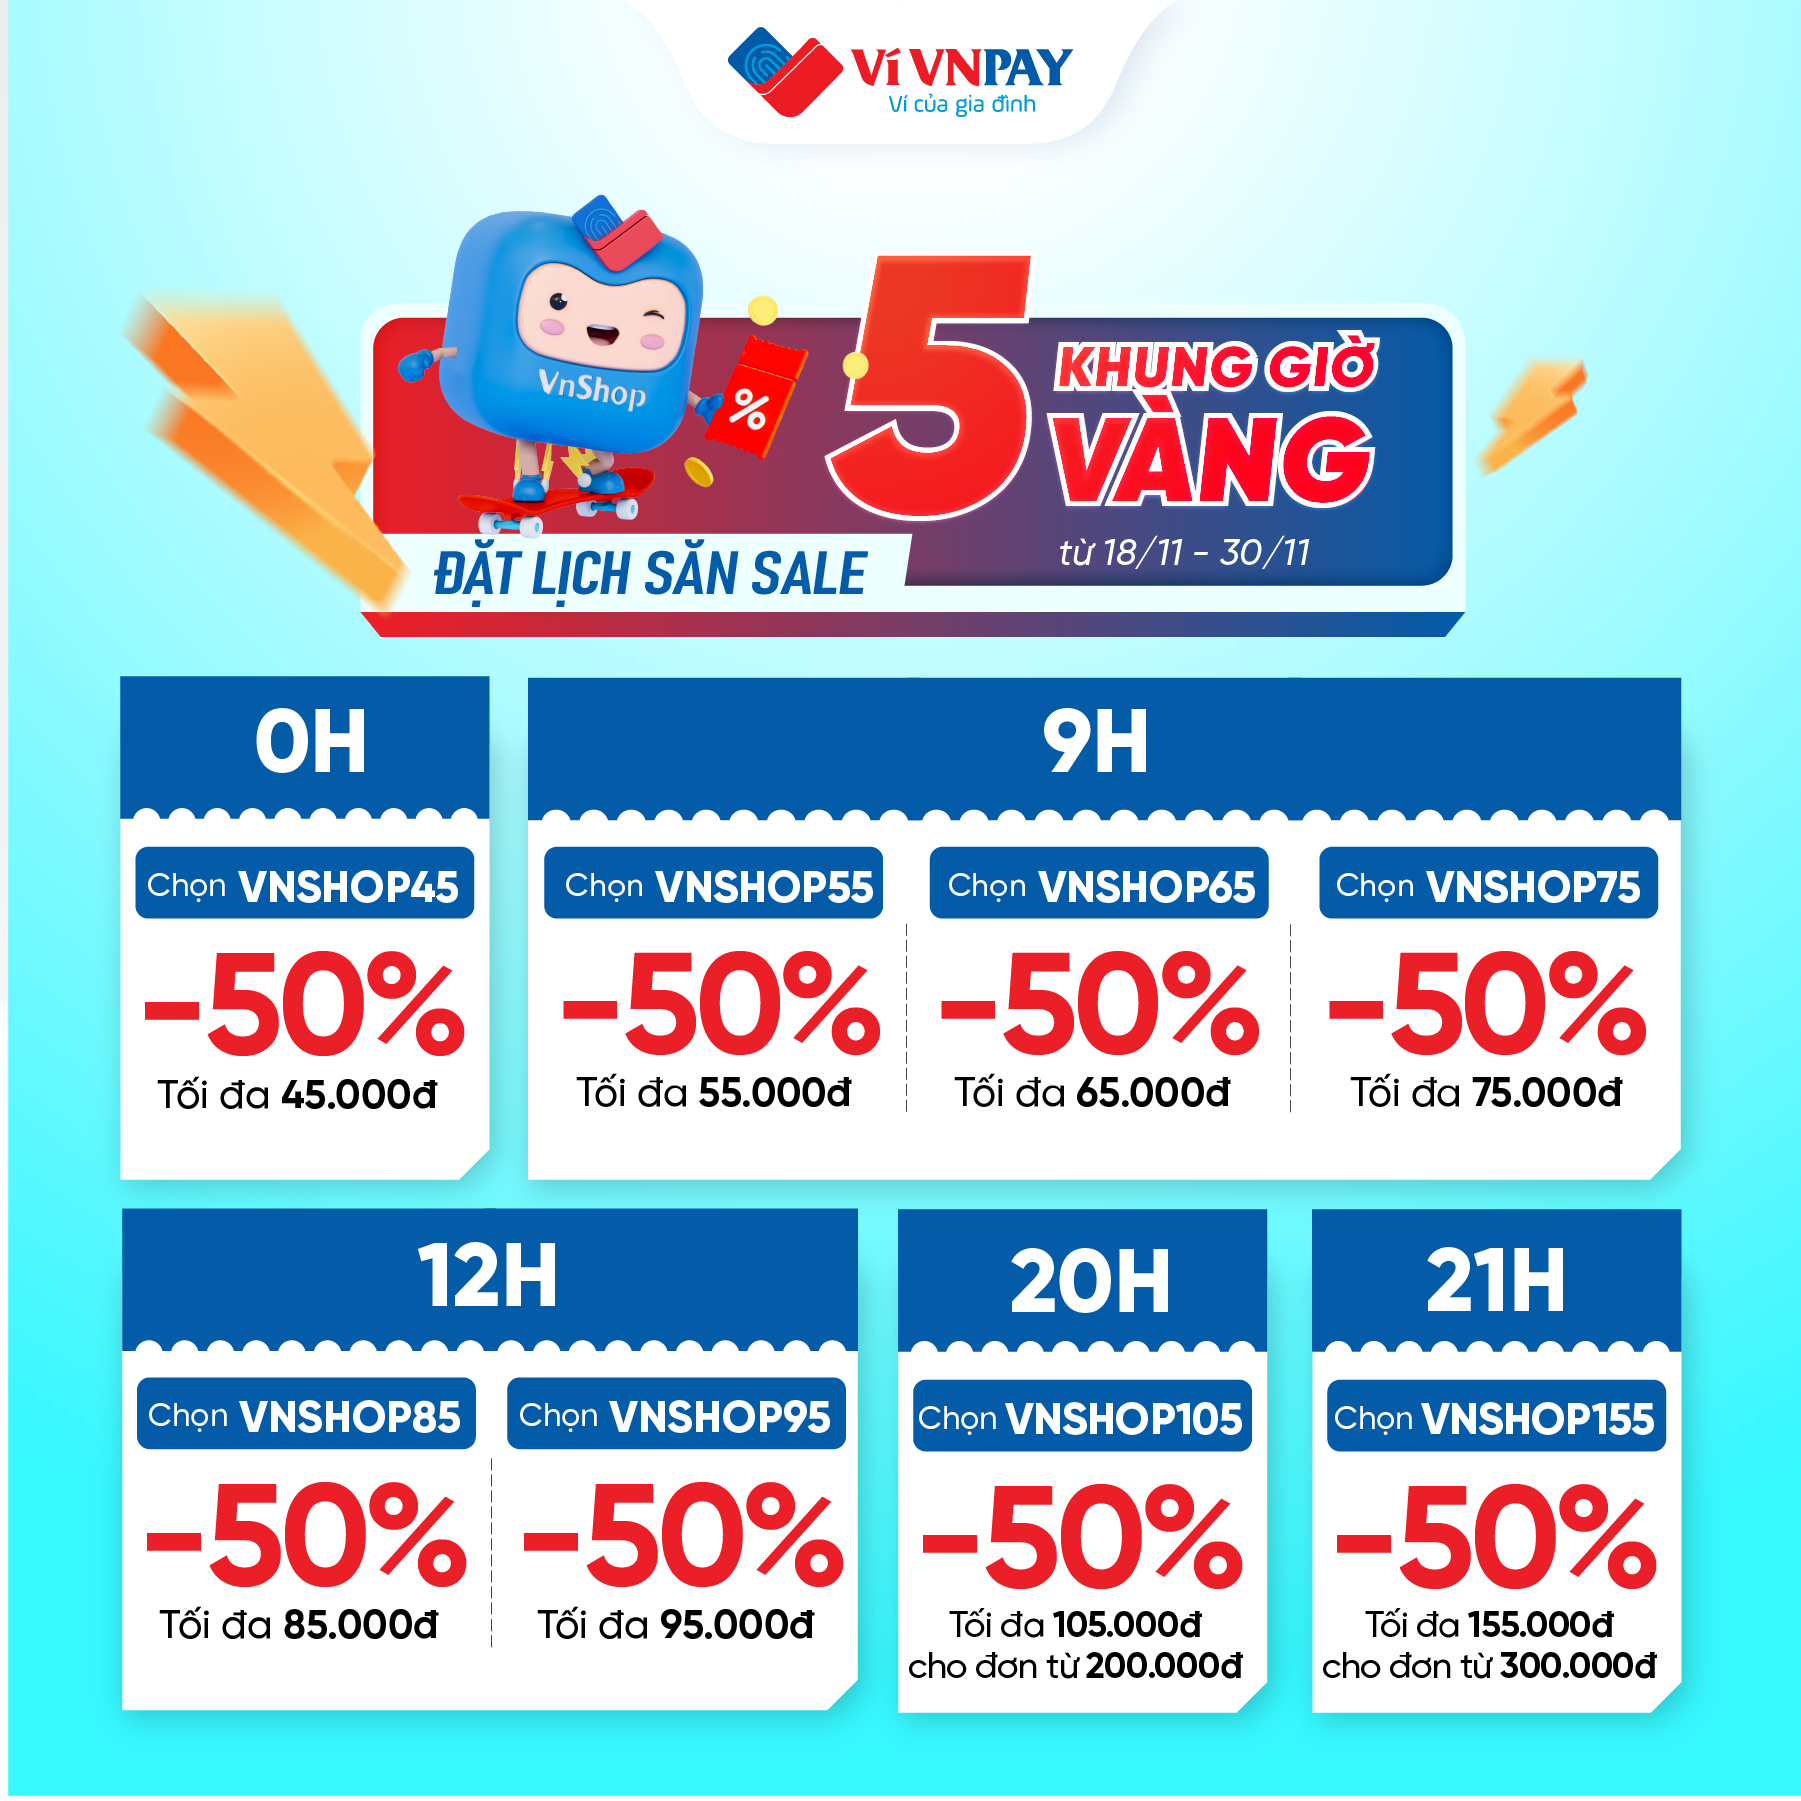 Mỗi khung giờ, Mua sắm VnShop trên Ví VNPAY tung mã giảm 50% hấp dẫn.